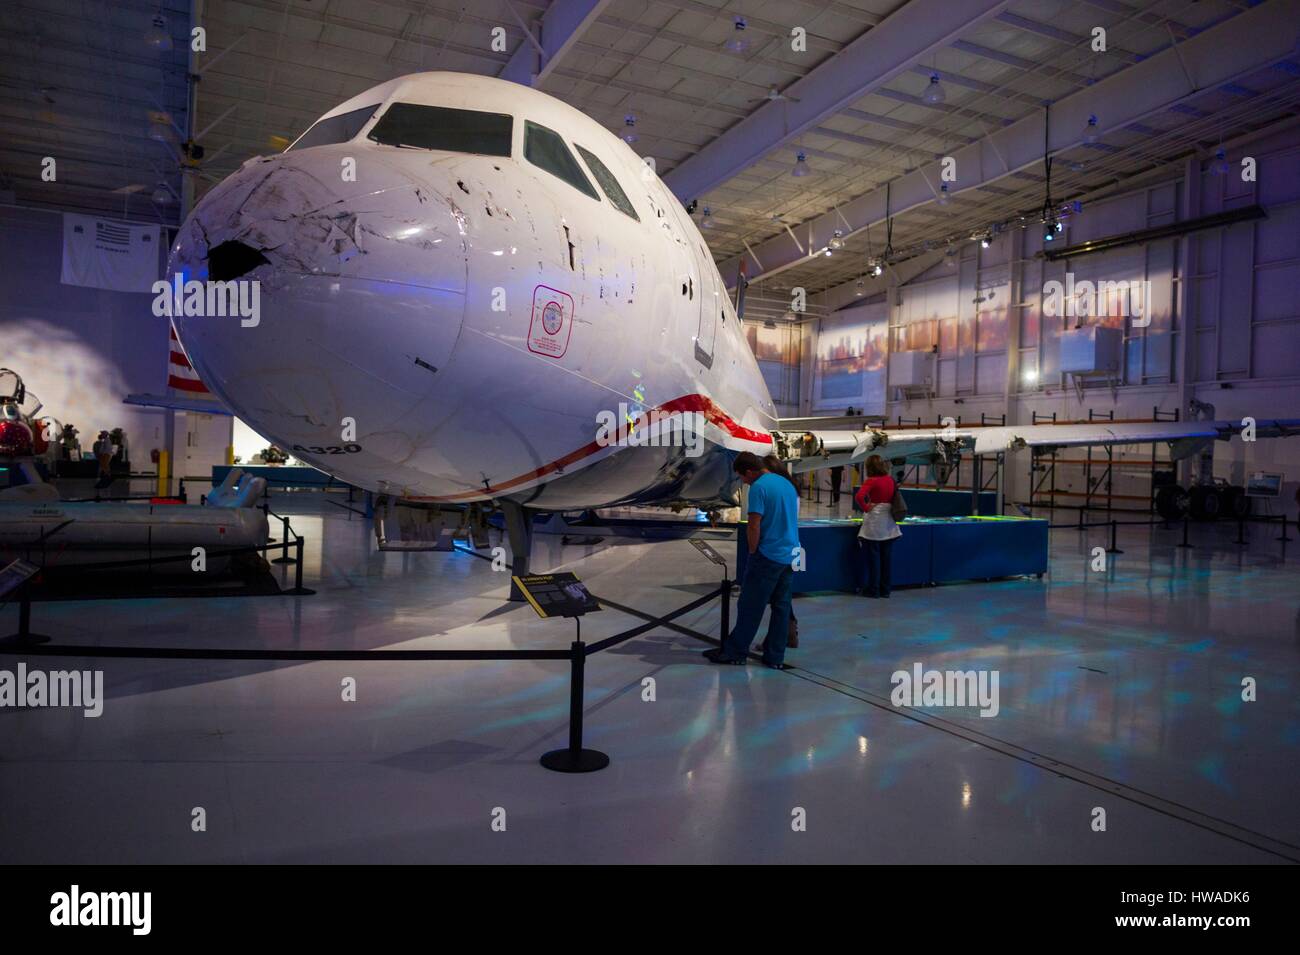 Stati Uniti, Nord Carolina, Charlotte, Carolina Aviation Museum, interno, display per US Airways lotta 1549 che crash sbarcati sull'acqua in NYC in Foto Stock